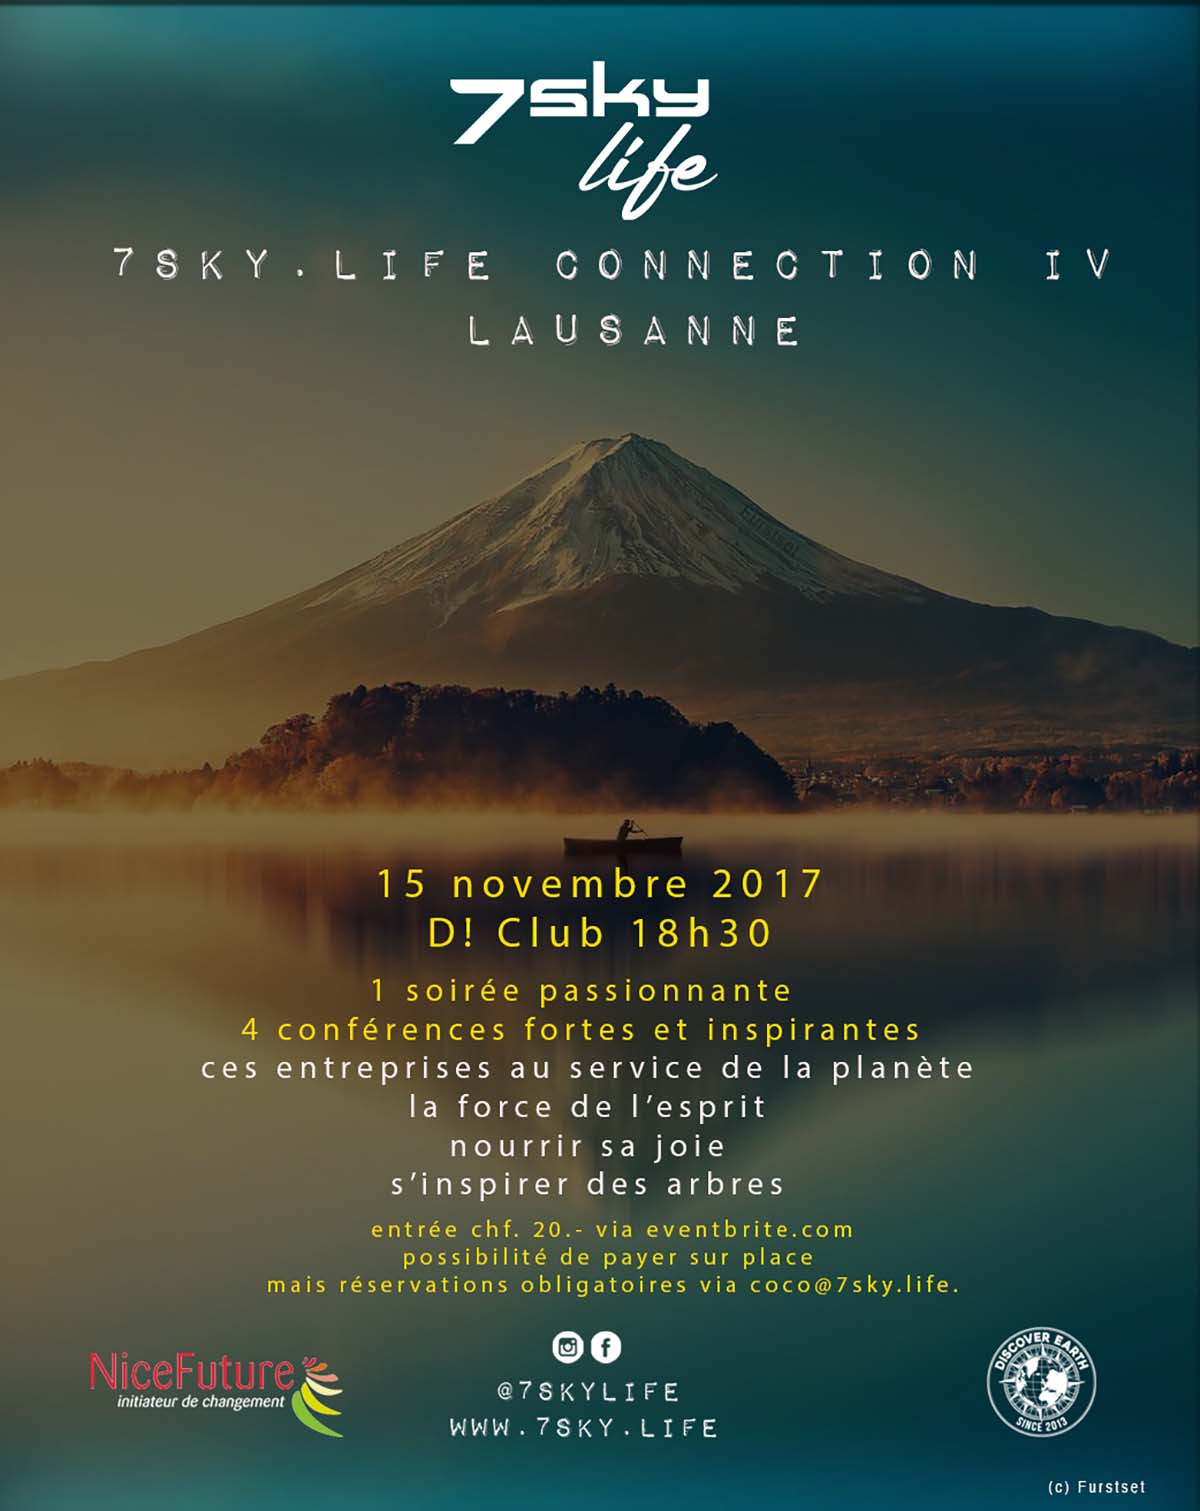 7sky.life Connection IV Lausanne – 15 novembre D!